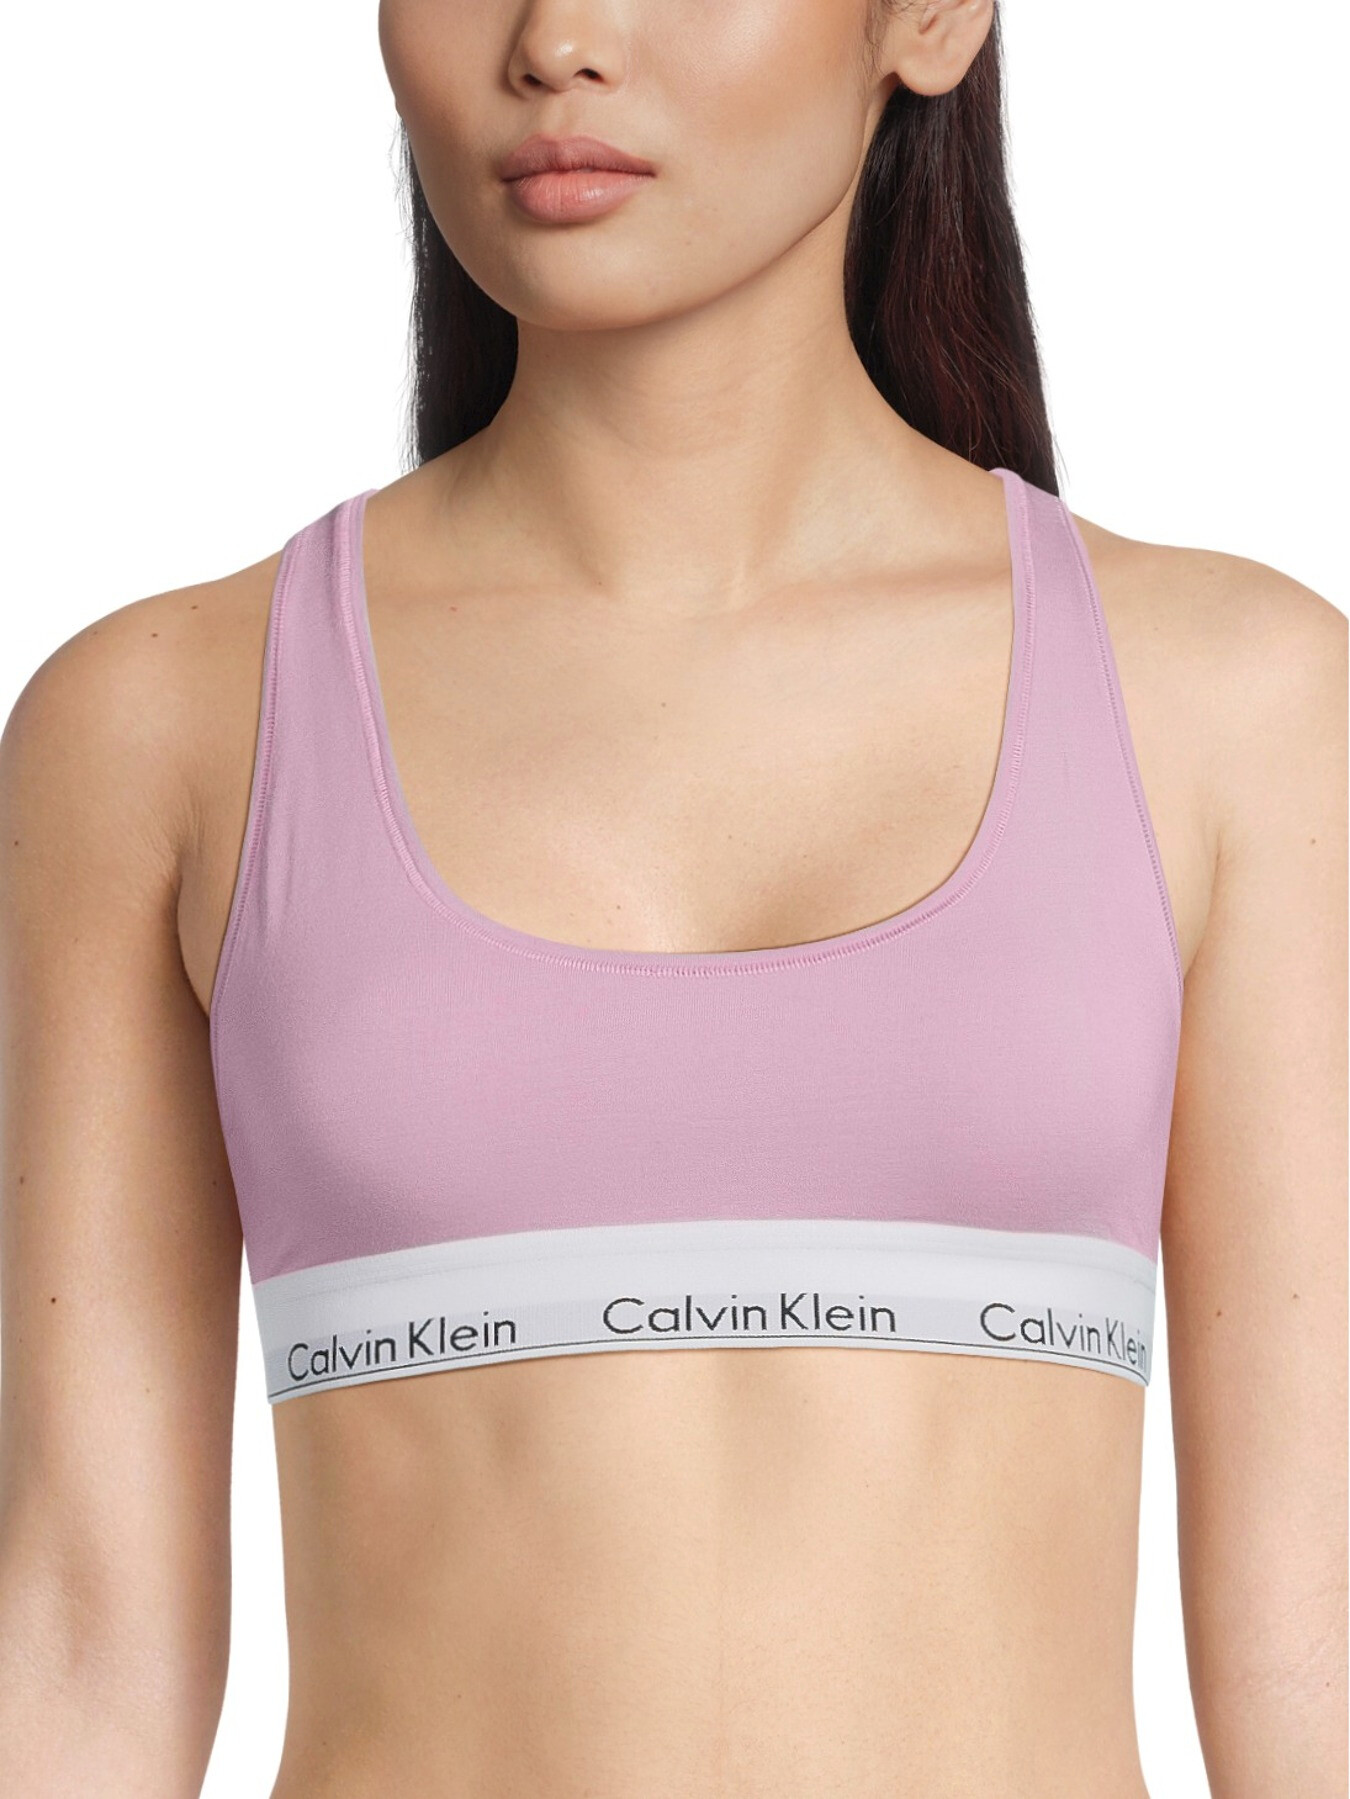 Calvin Klein Modern Cotton Bralette, Mauve Mist, XS-XL - Bras